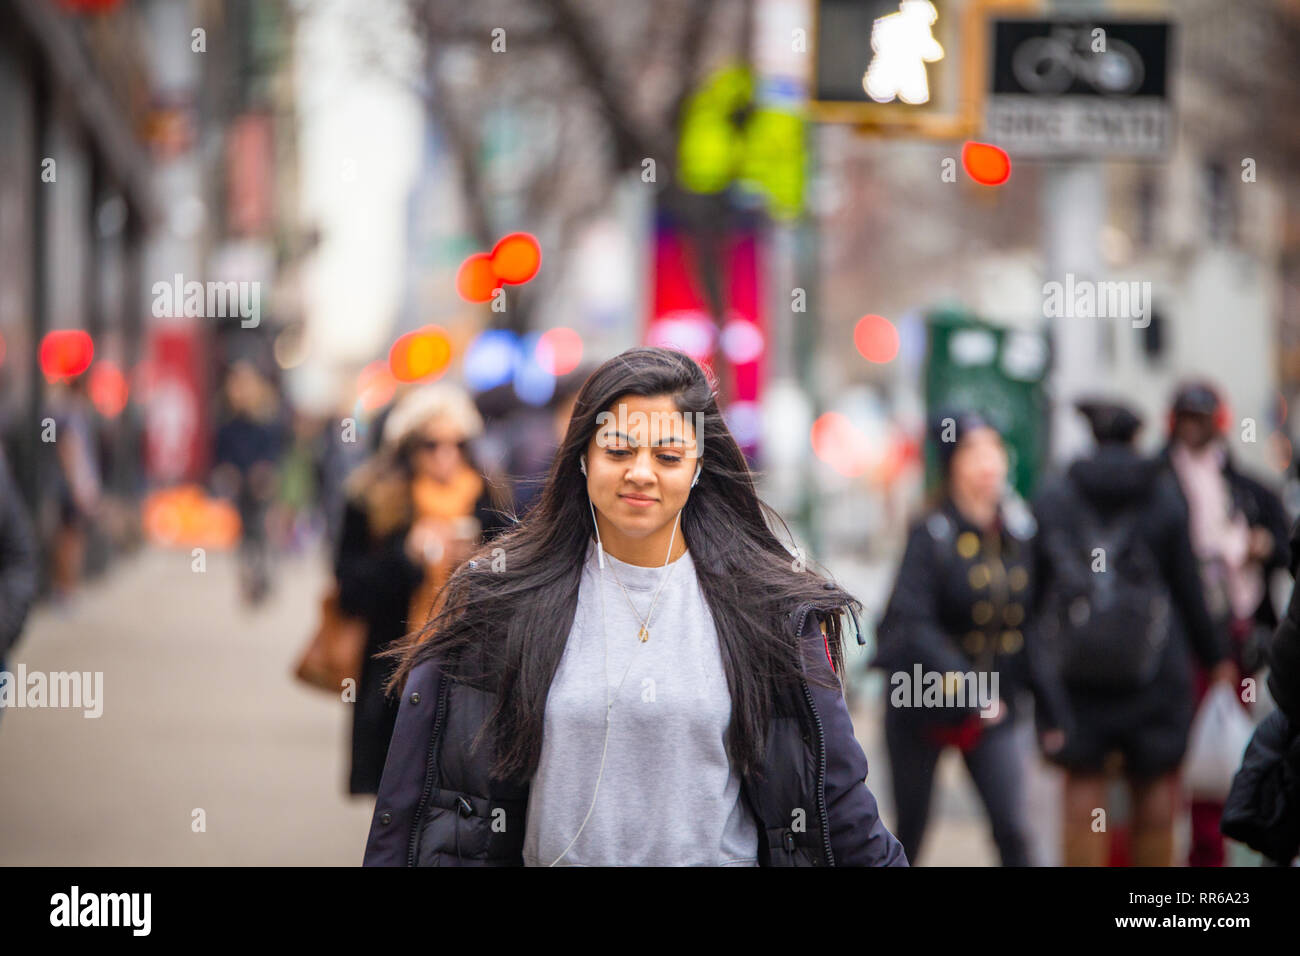 NEW YORK CITY - Dicembre 14, 2018: inverno scene di strada nella città di New York Manhattan con persone reali in situazioni di tutti i giorni su strada urbana Foto Stock